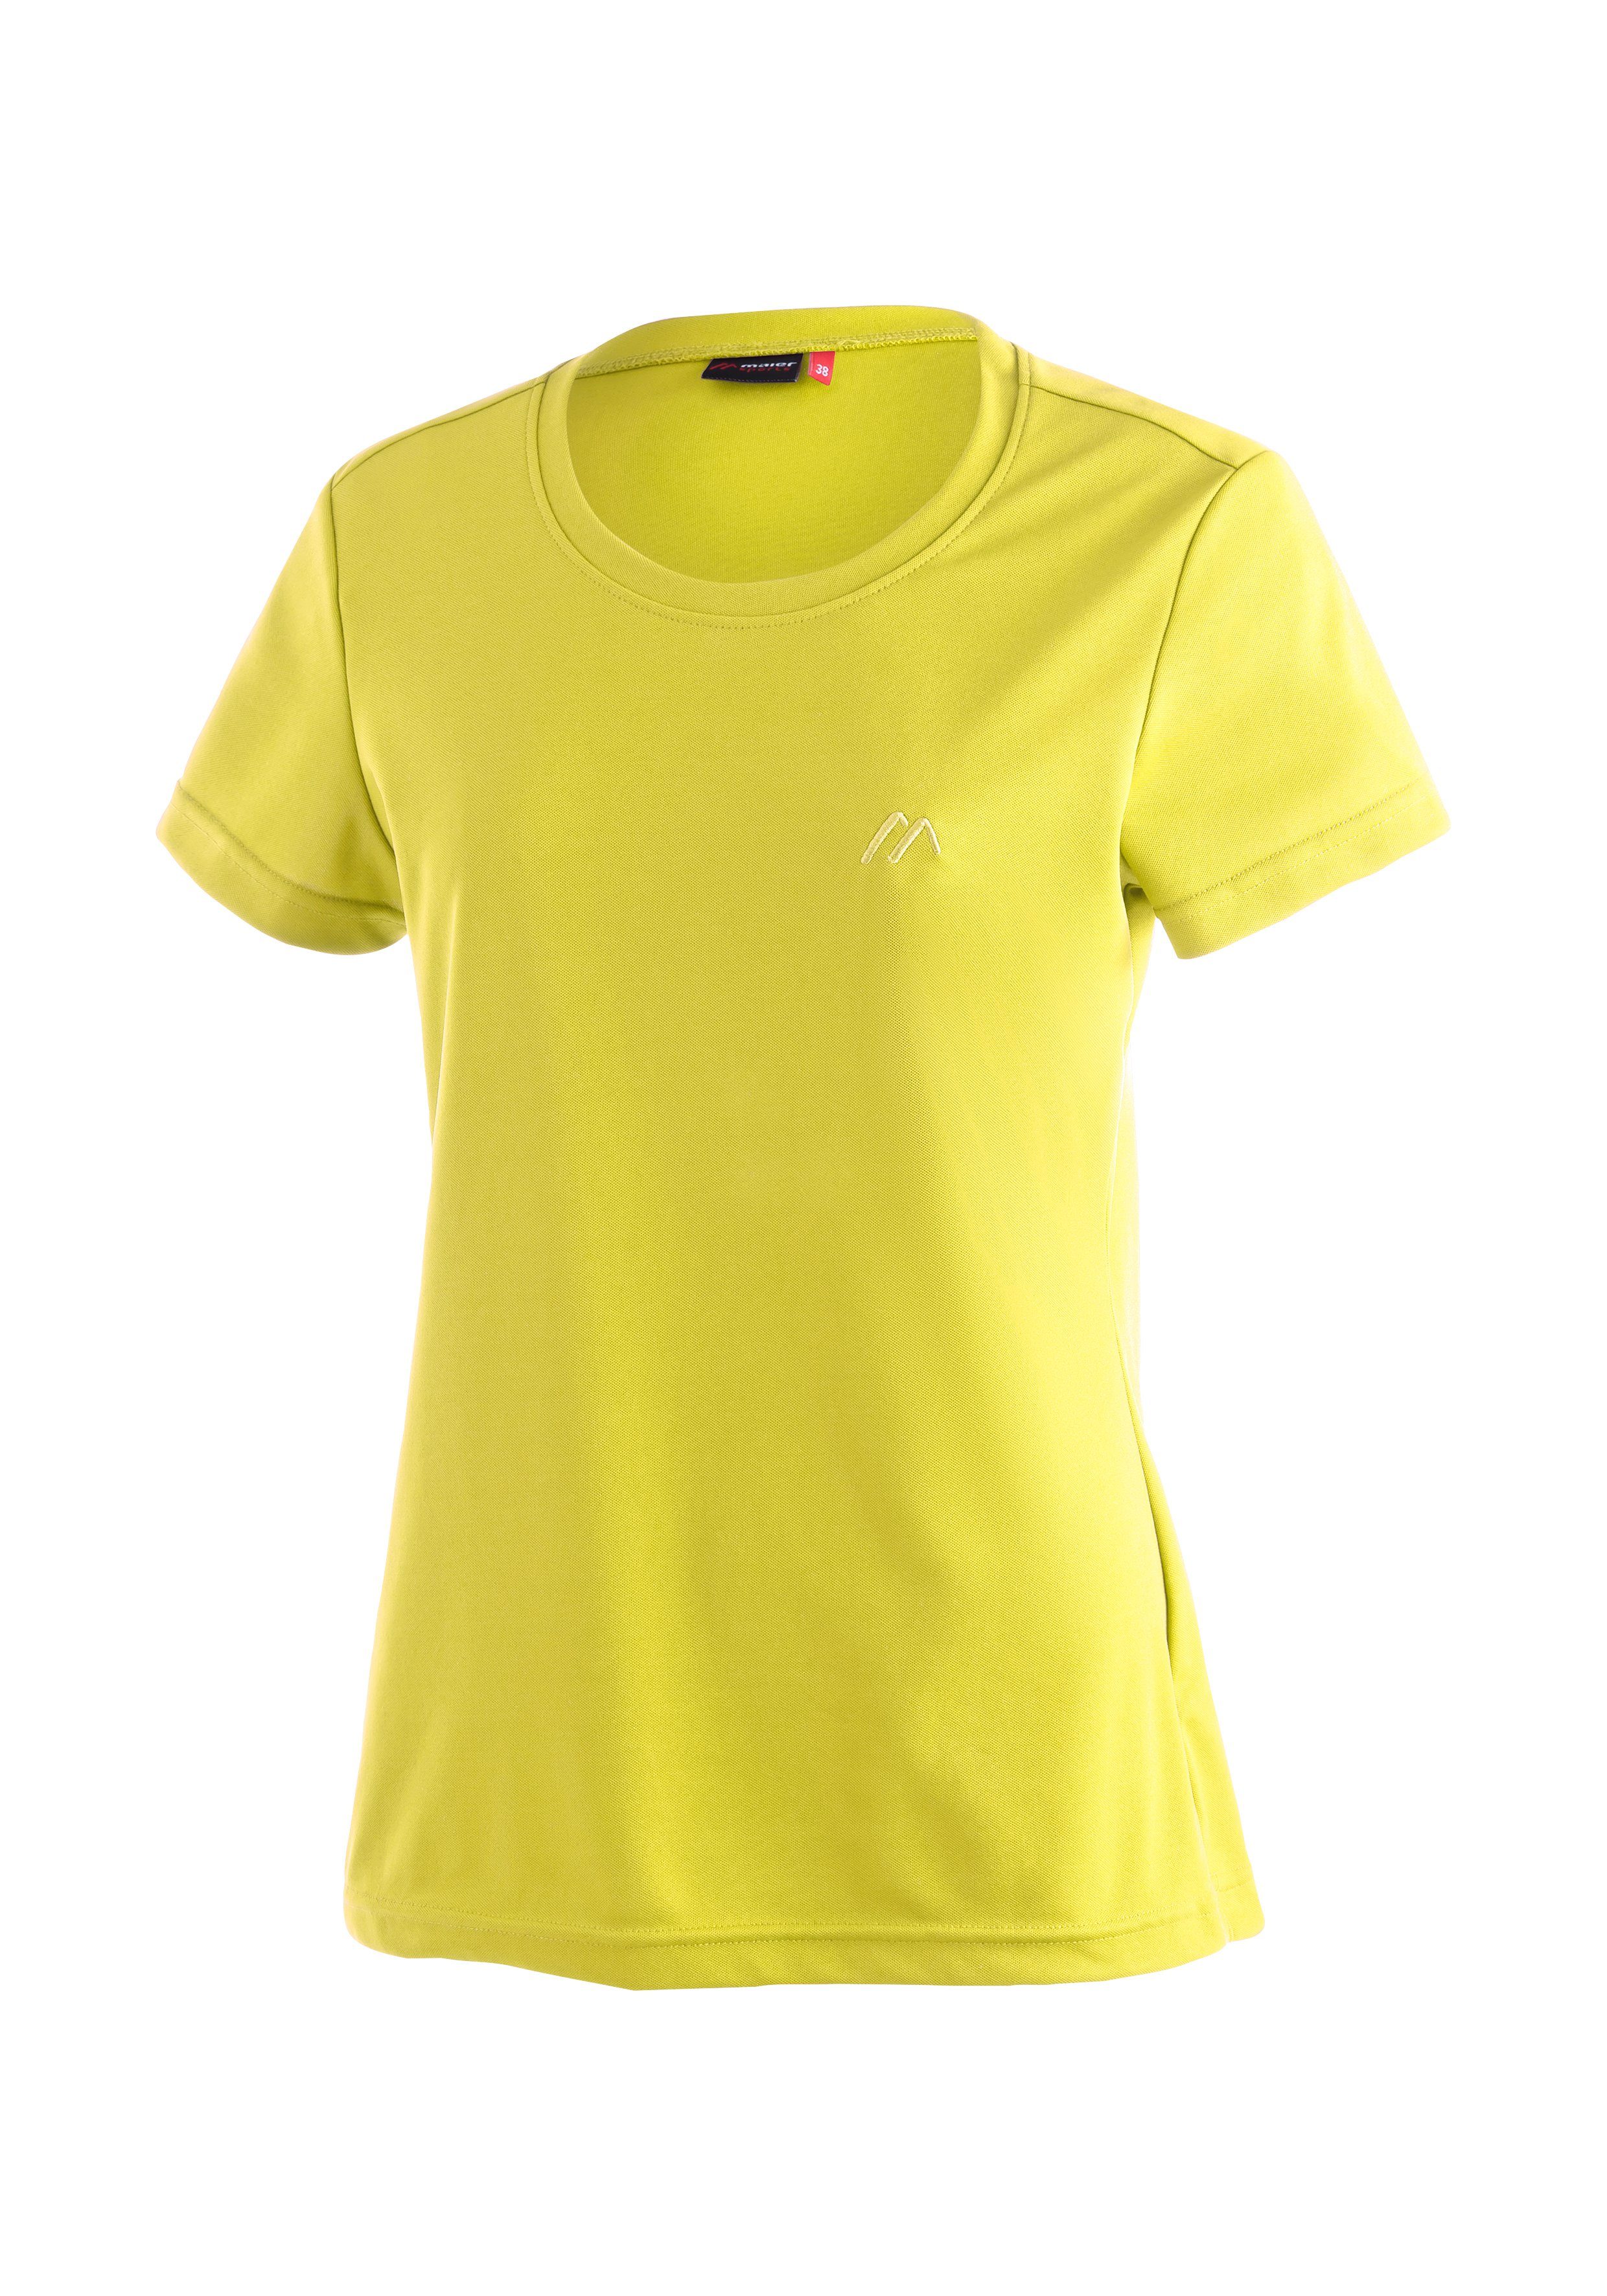 Maier Sports Funktionsshirt Waltraud komfortabel und schnell trocknend,  Funktionelles schnell trocknendes Damen T-Shirt